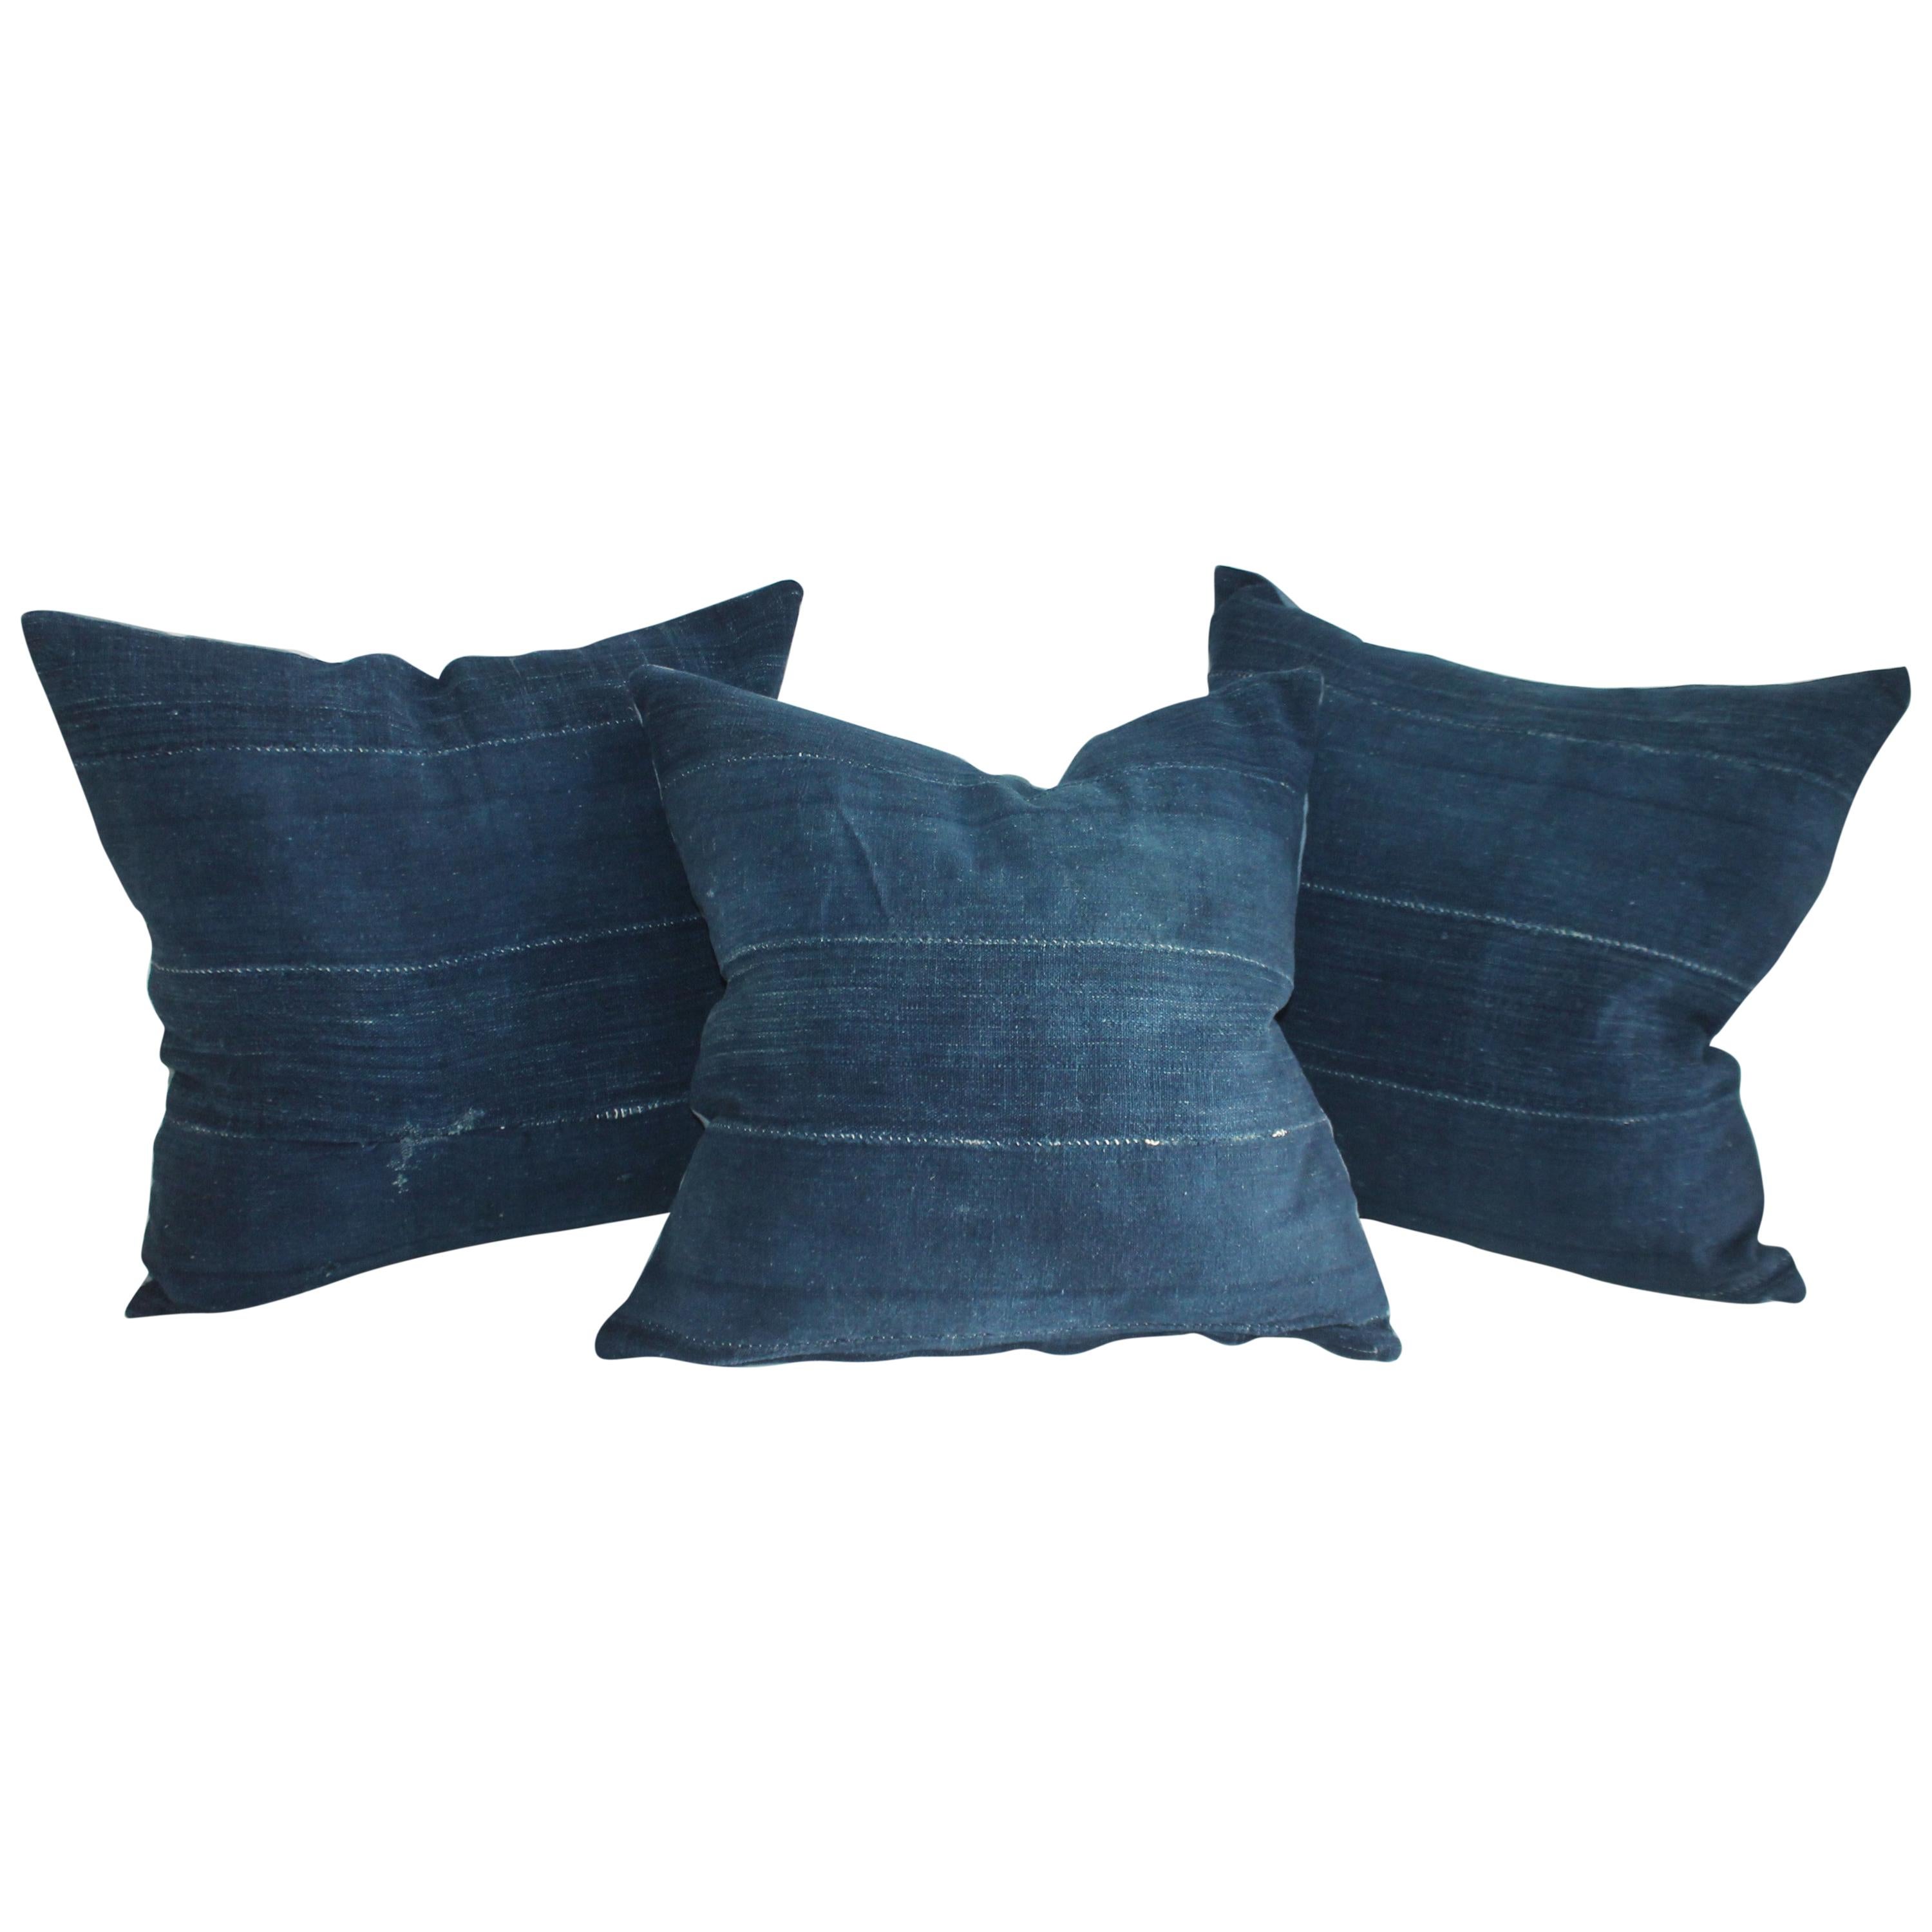 19th century Indigo Blue Linen Pillows, 3